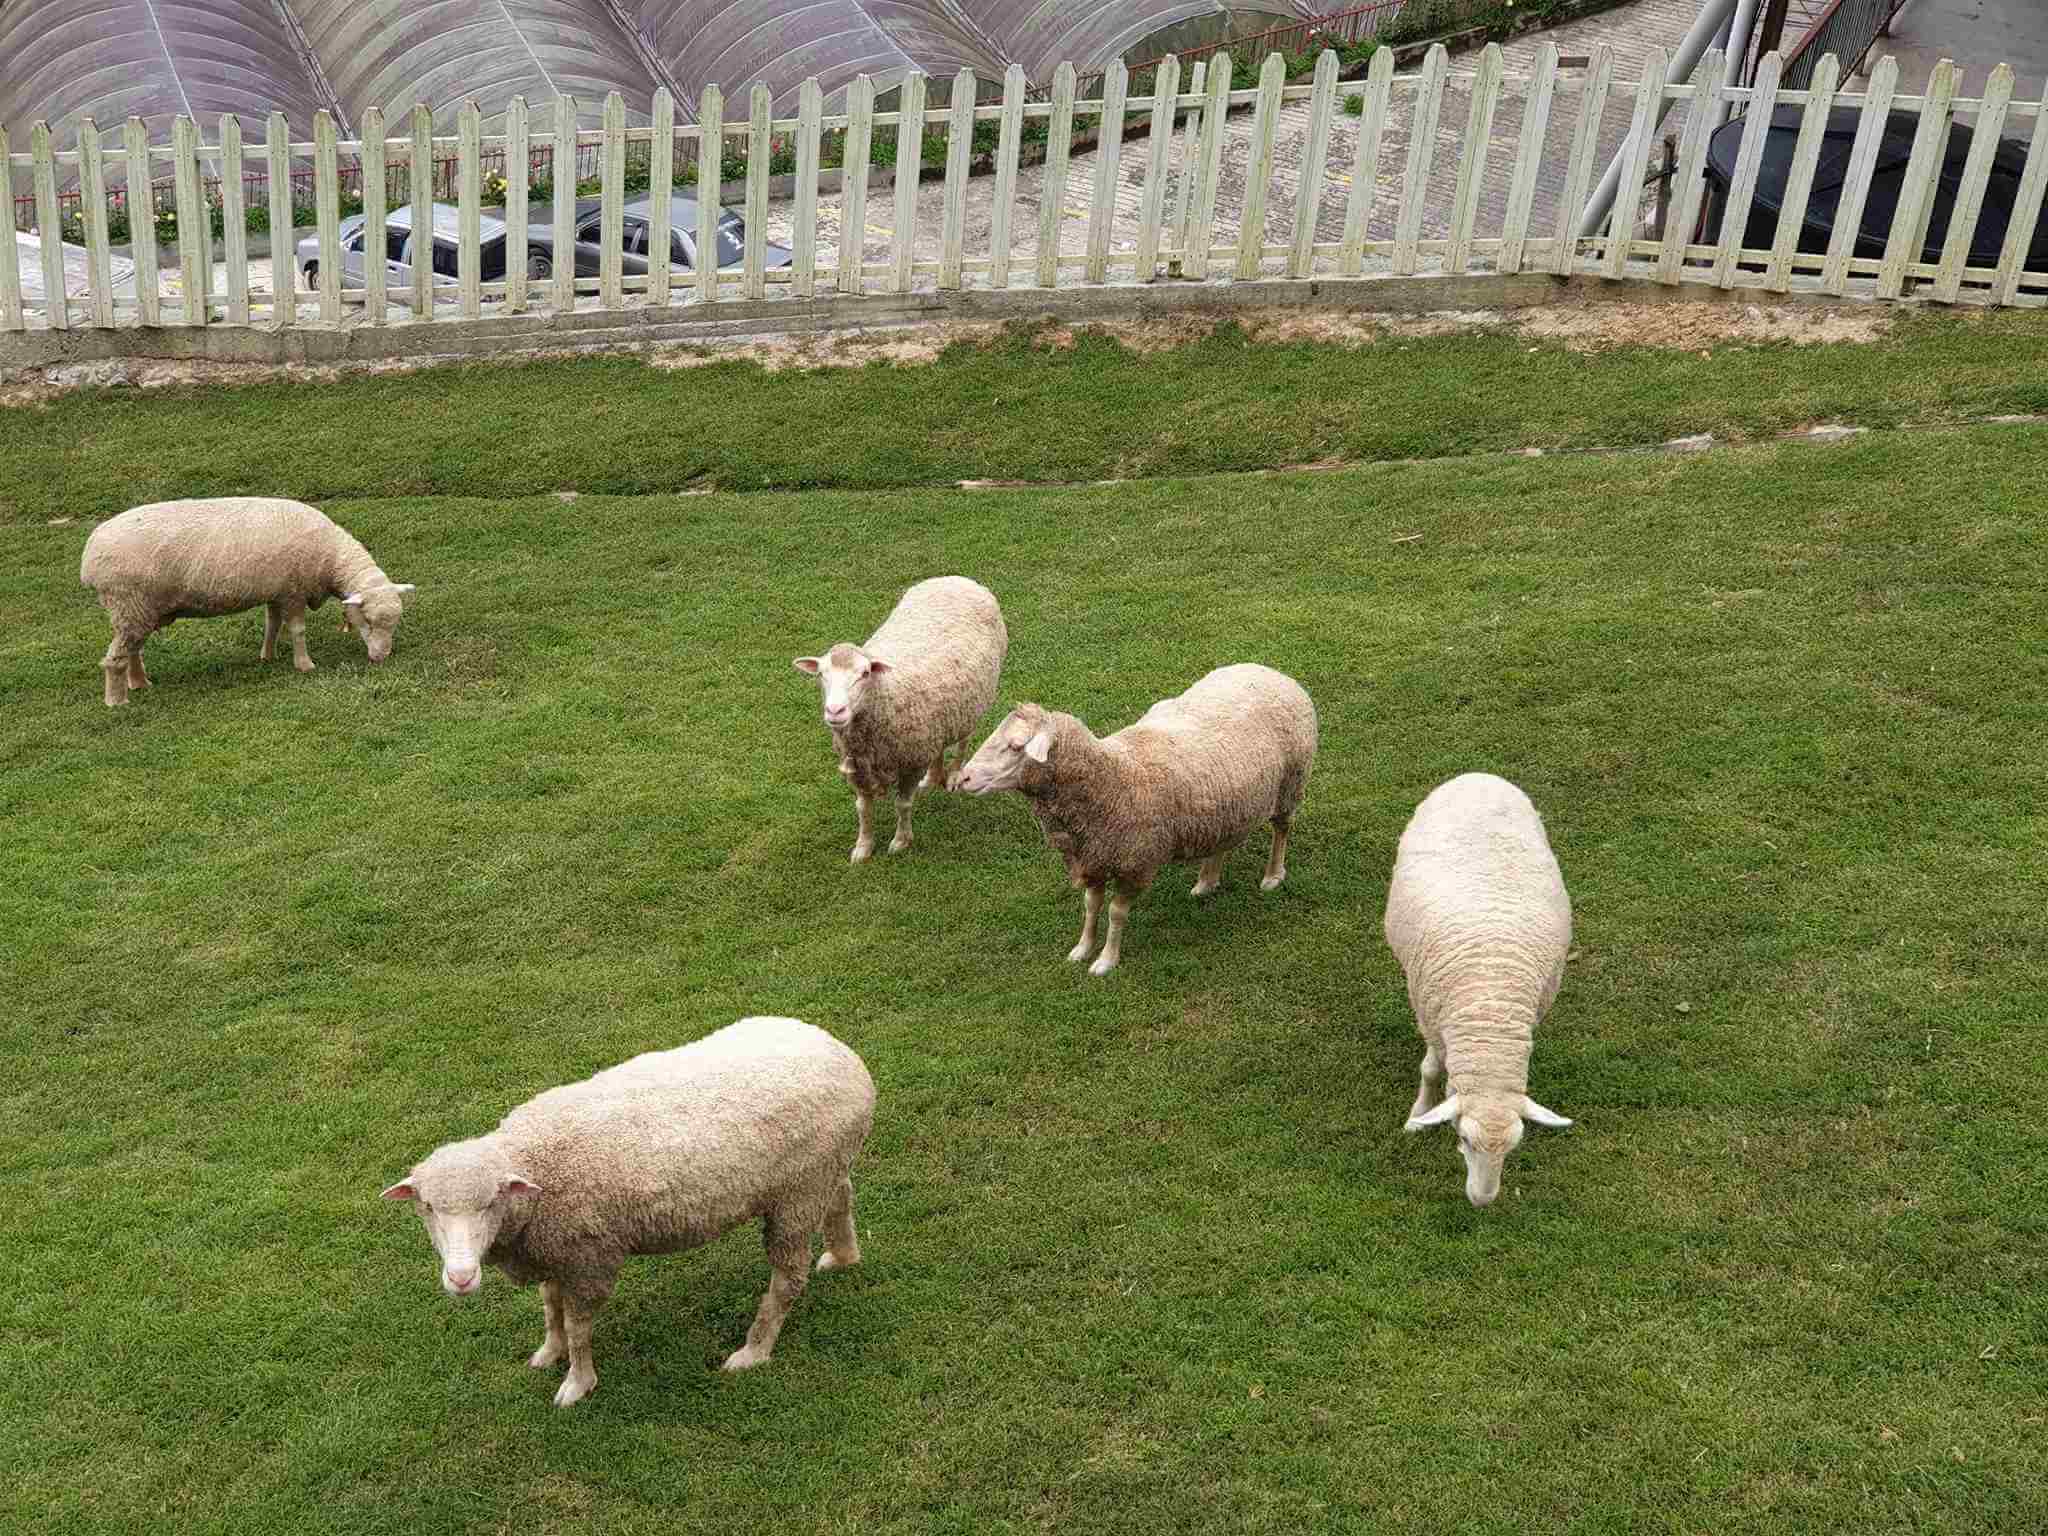 The Sheep Sanctuary (Tempat Perlindungan Biri-Biri)